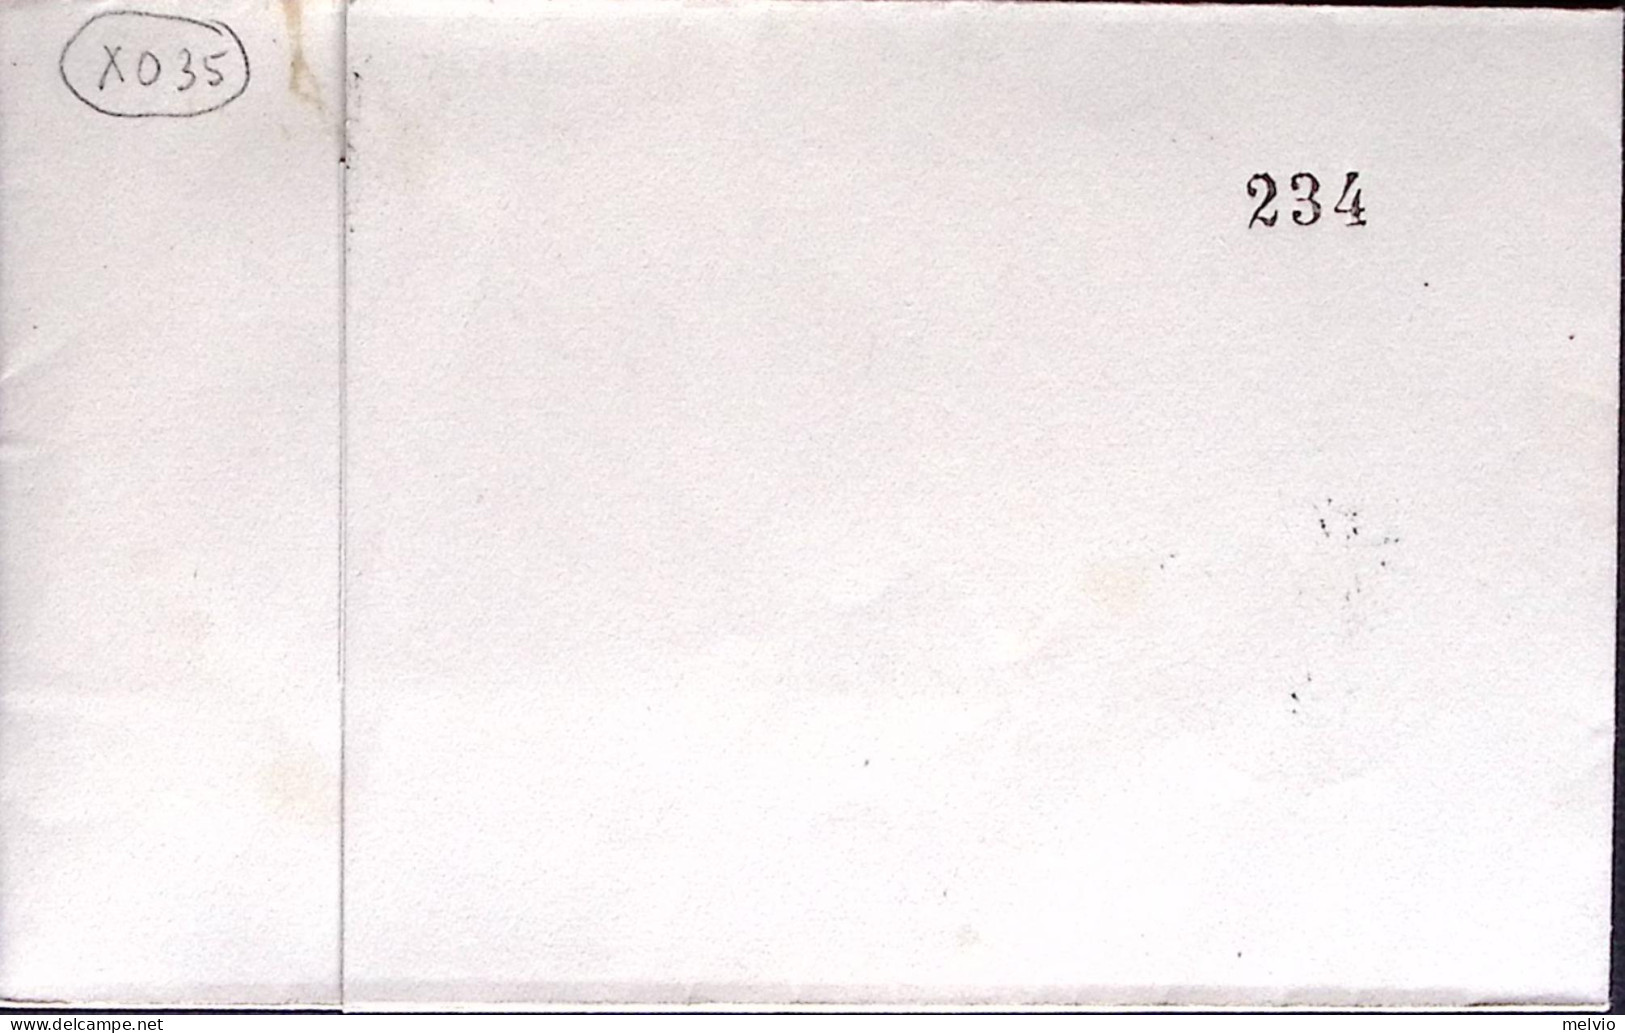 1950-SAN MARINO Corriera Postale San Marini-Riccione Annullo Speciale (2.9) Su B - Lettres & Documents